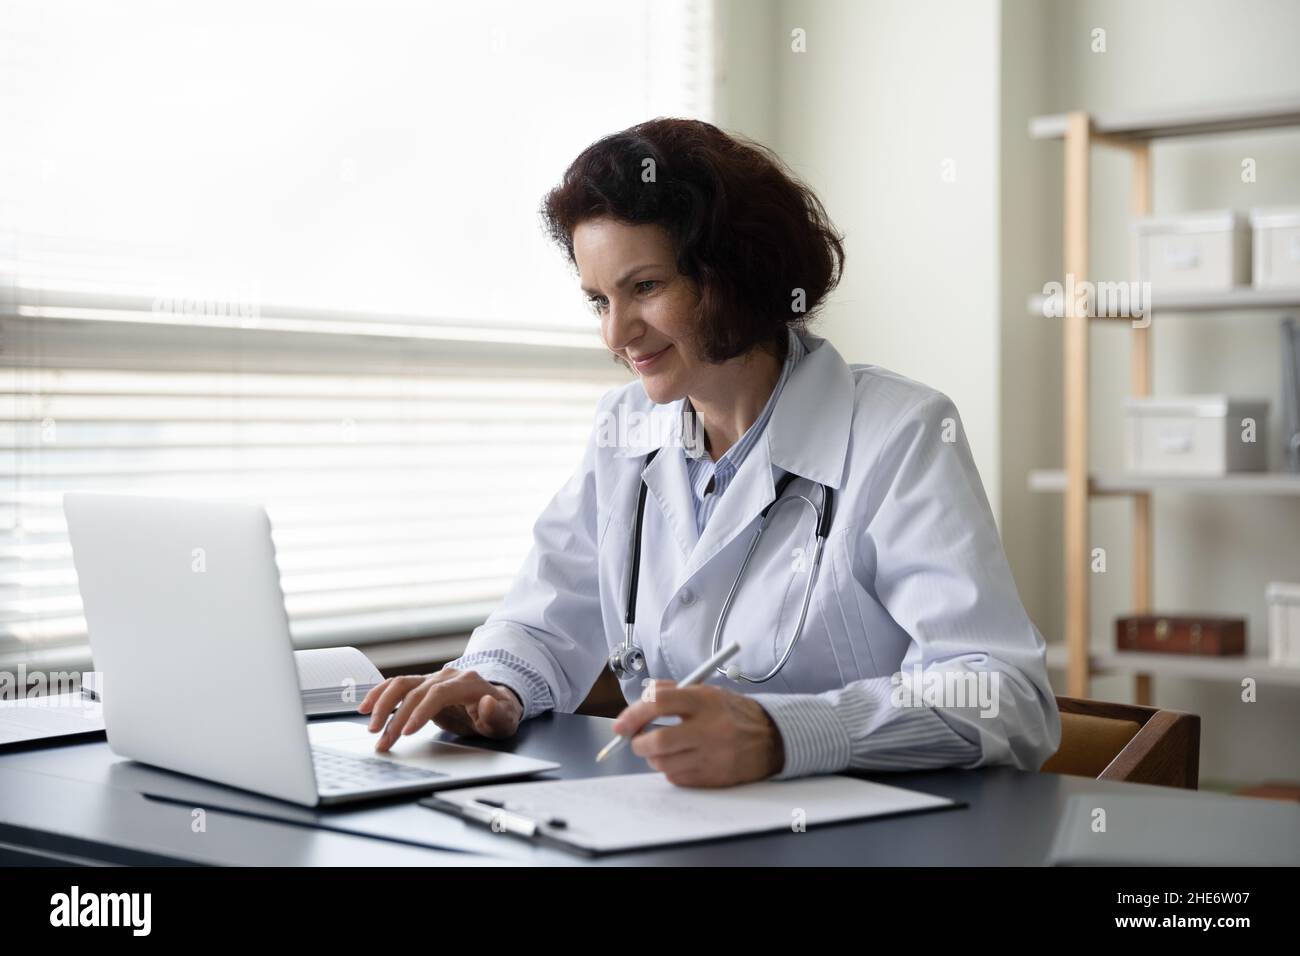 Glückliche alte reife weibliche Ärztin, die im Klinikbüro arbeitet. Stockfoto